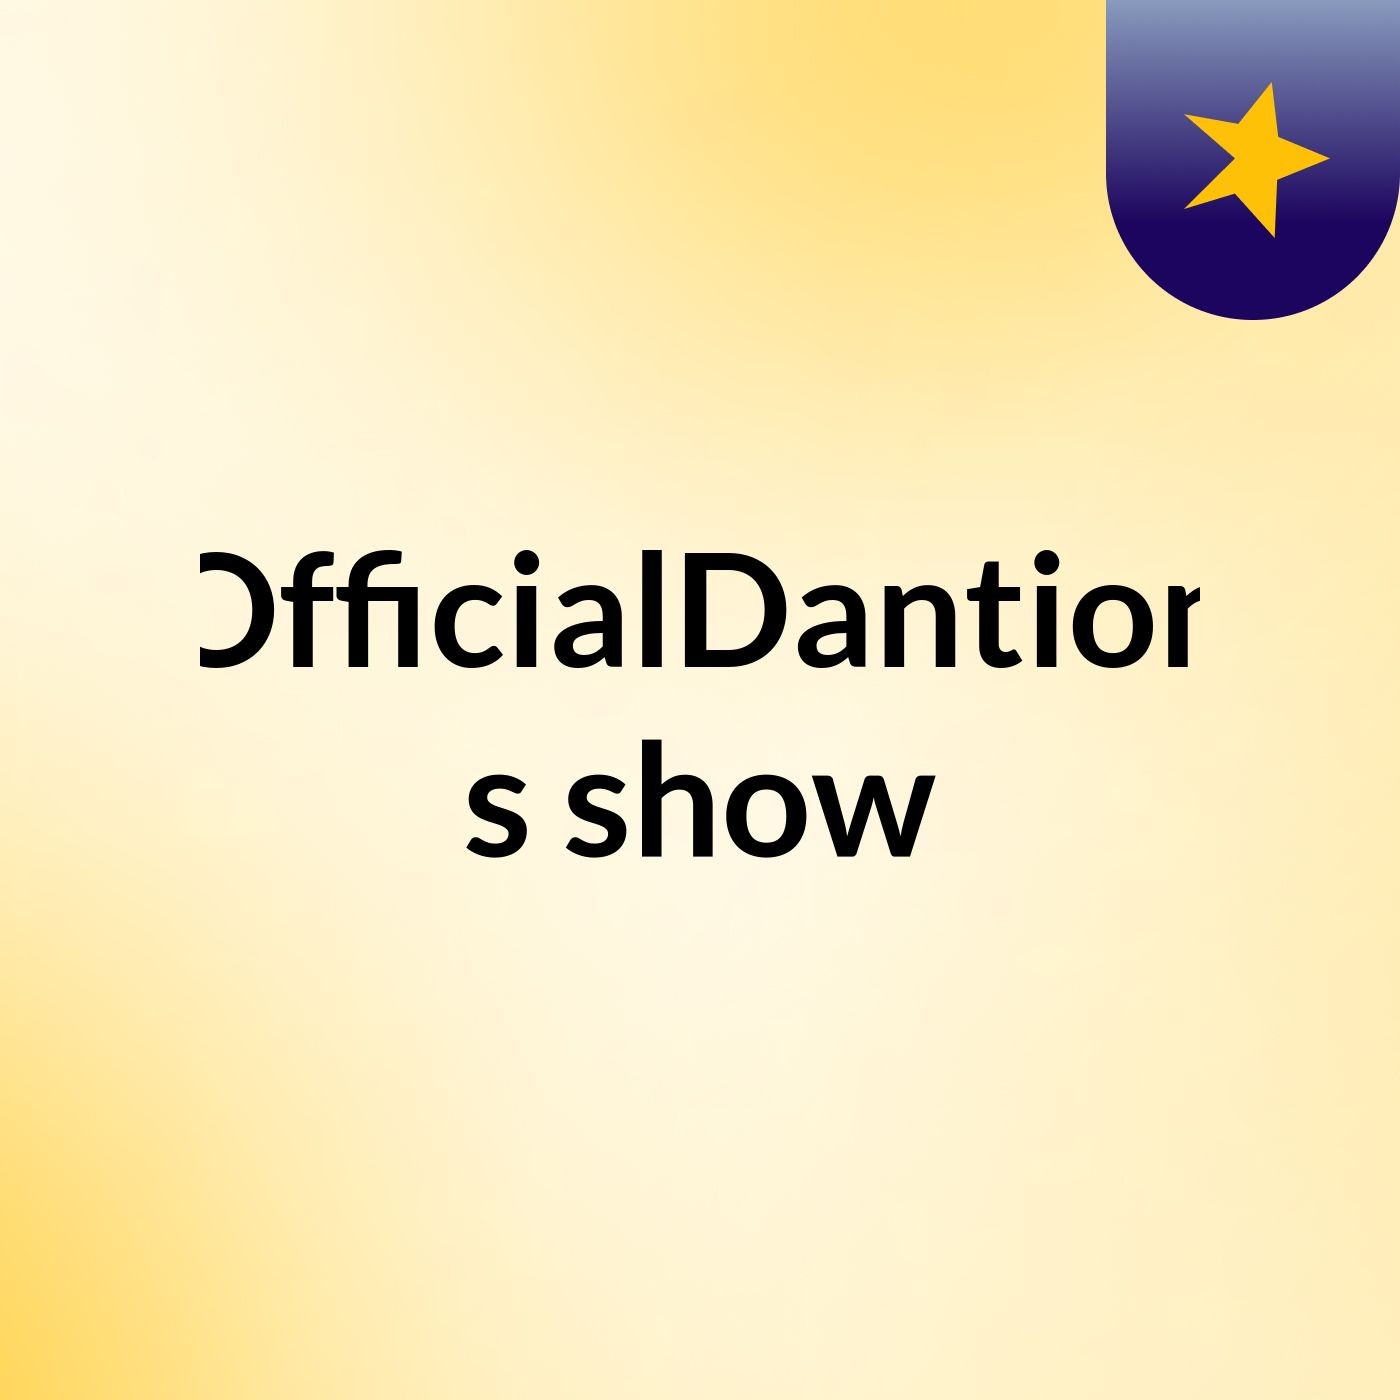 OfficialDantion's show